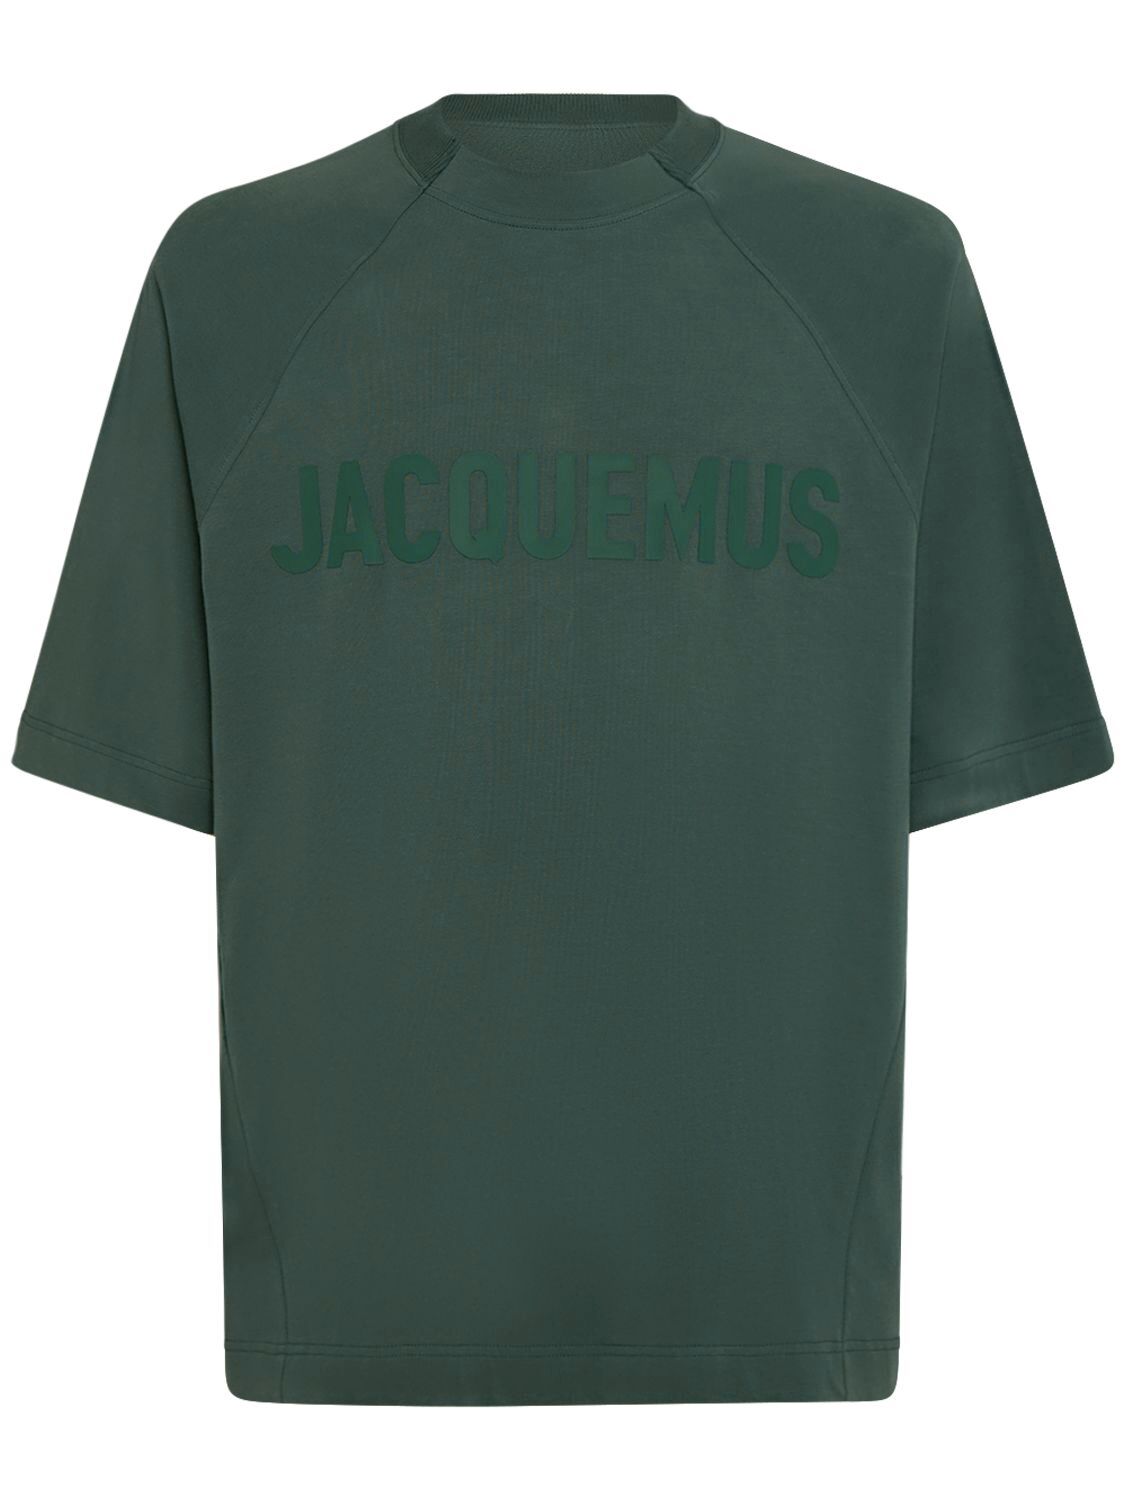 Le Tshirt Typo Cotton T-shirt - JACQUEMUS - Modalova